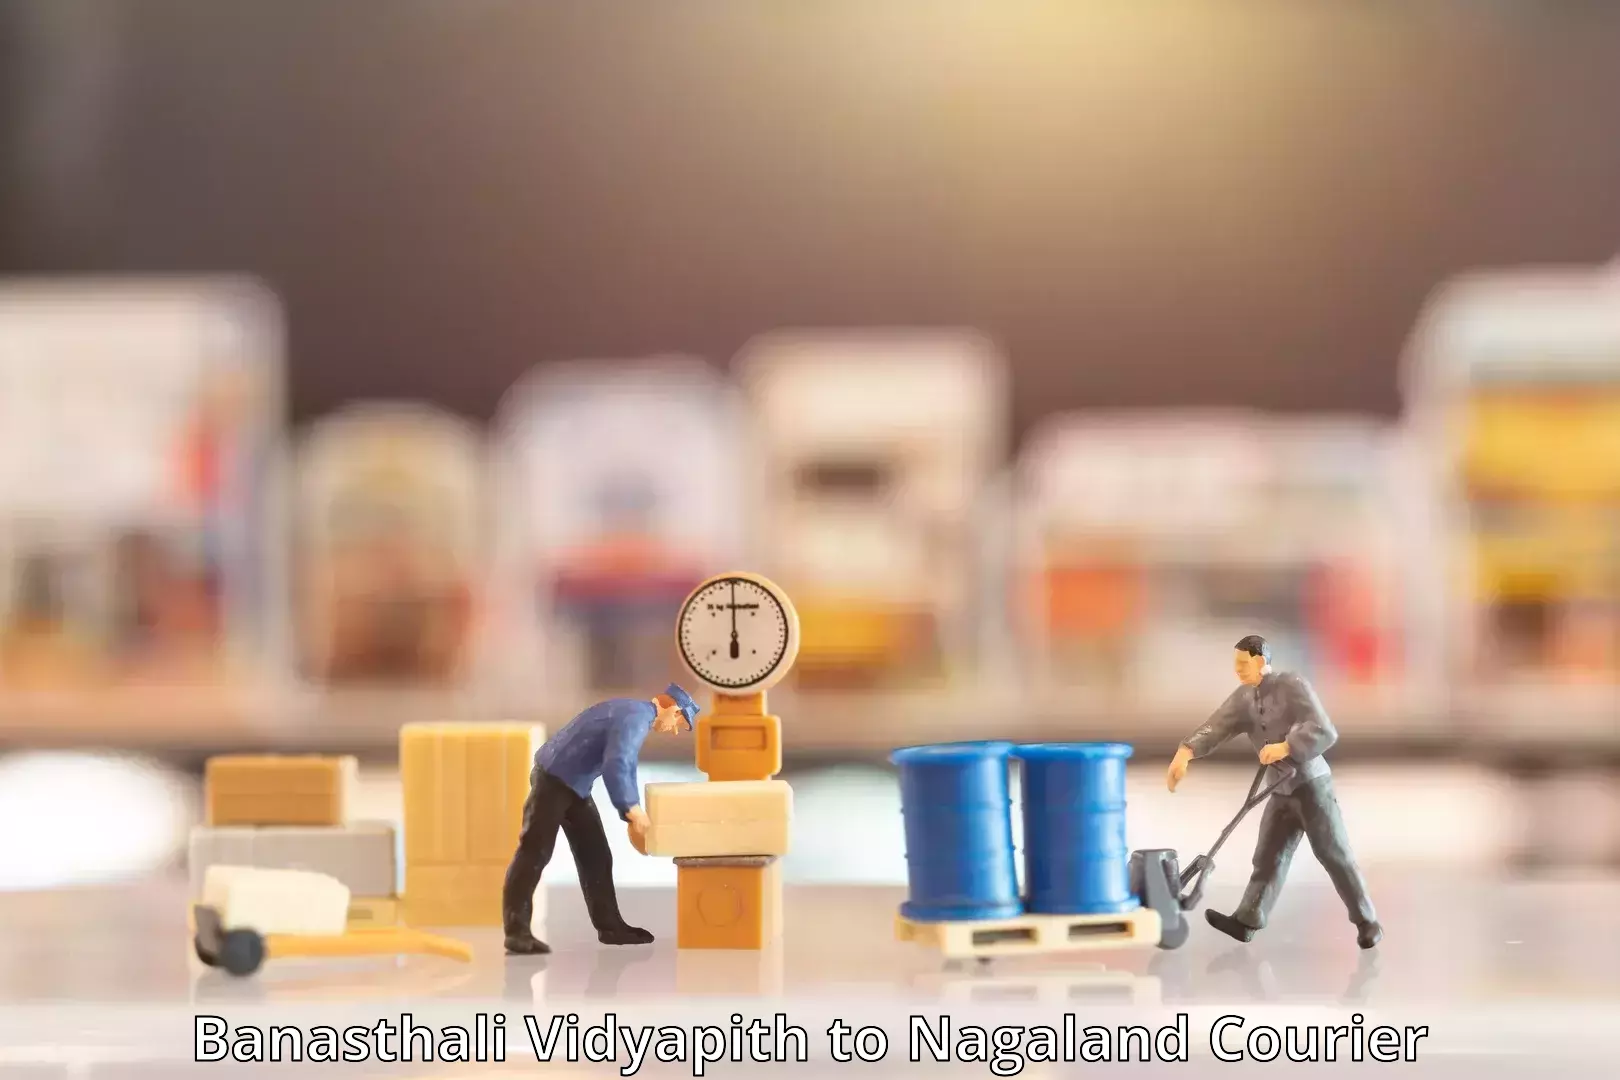 Customer-centric shipping Banasthali Vidyapith to NIT Nagaland